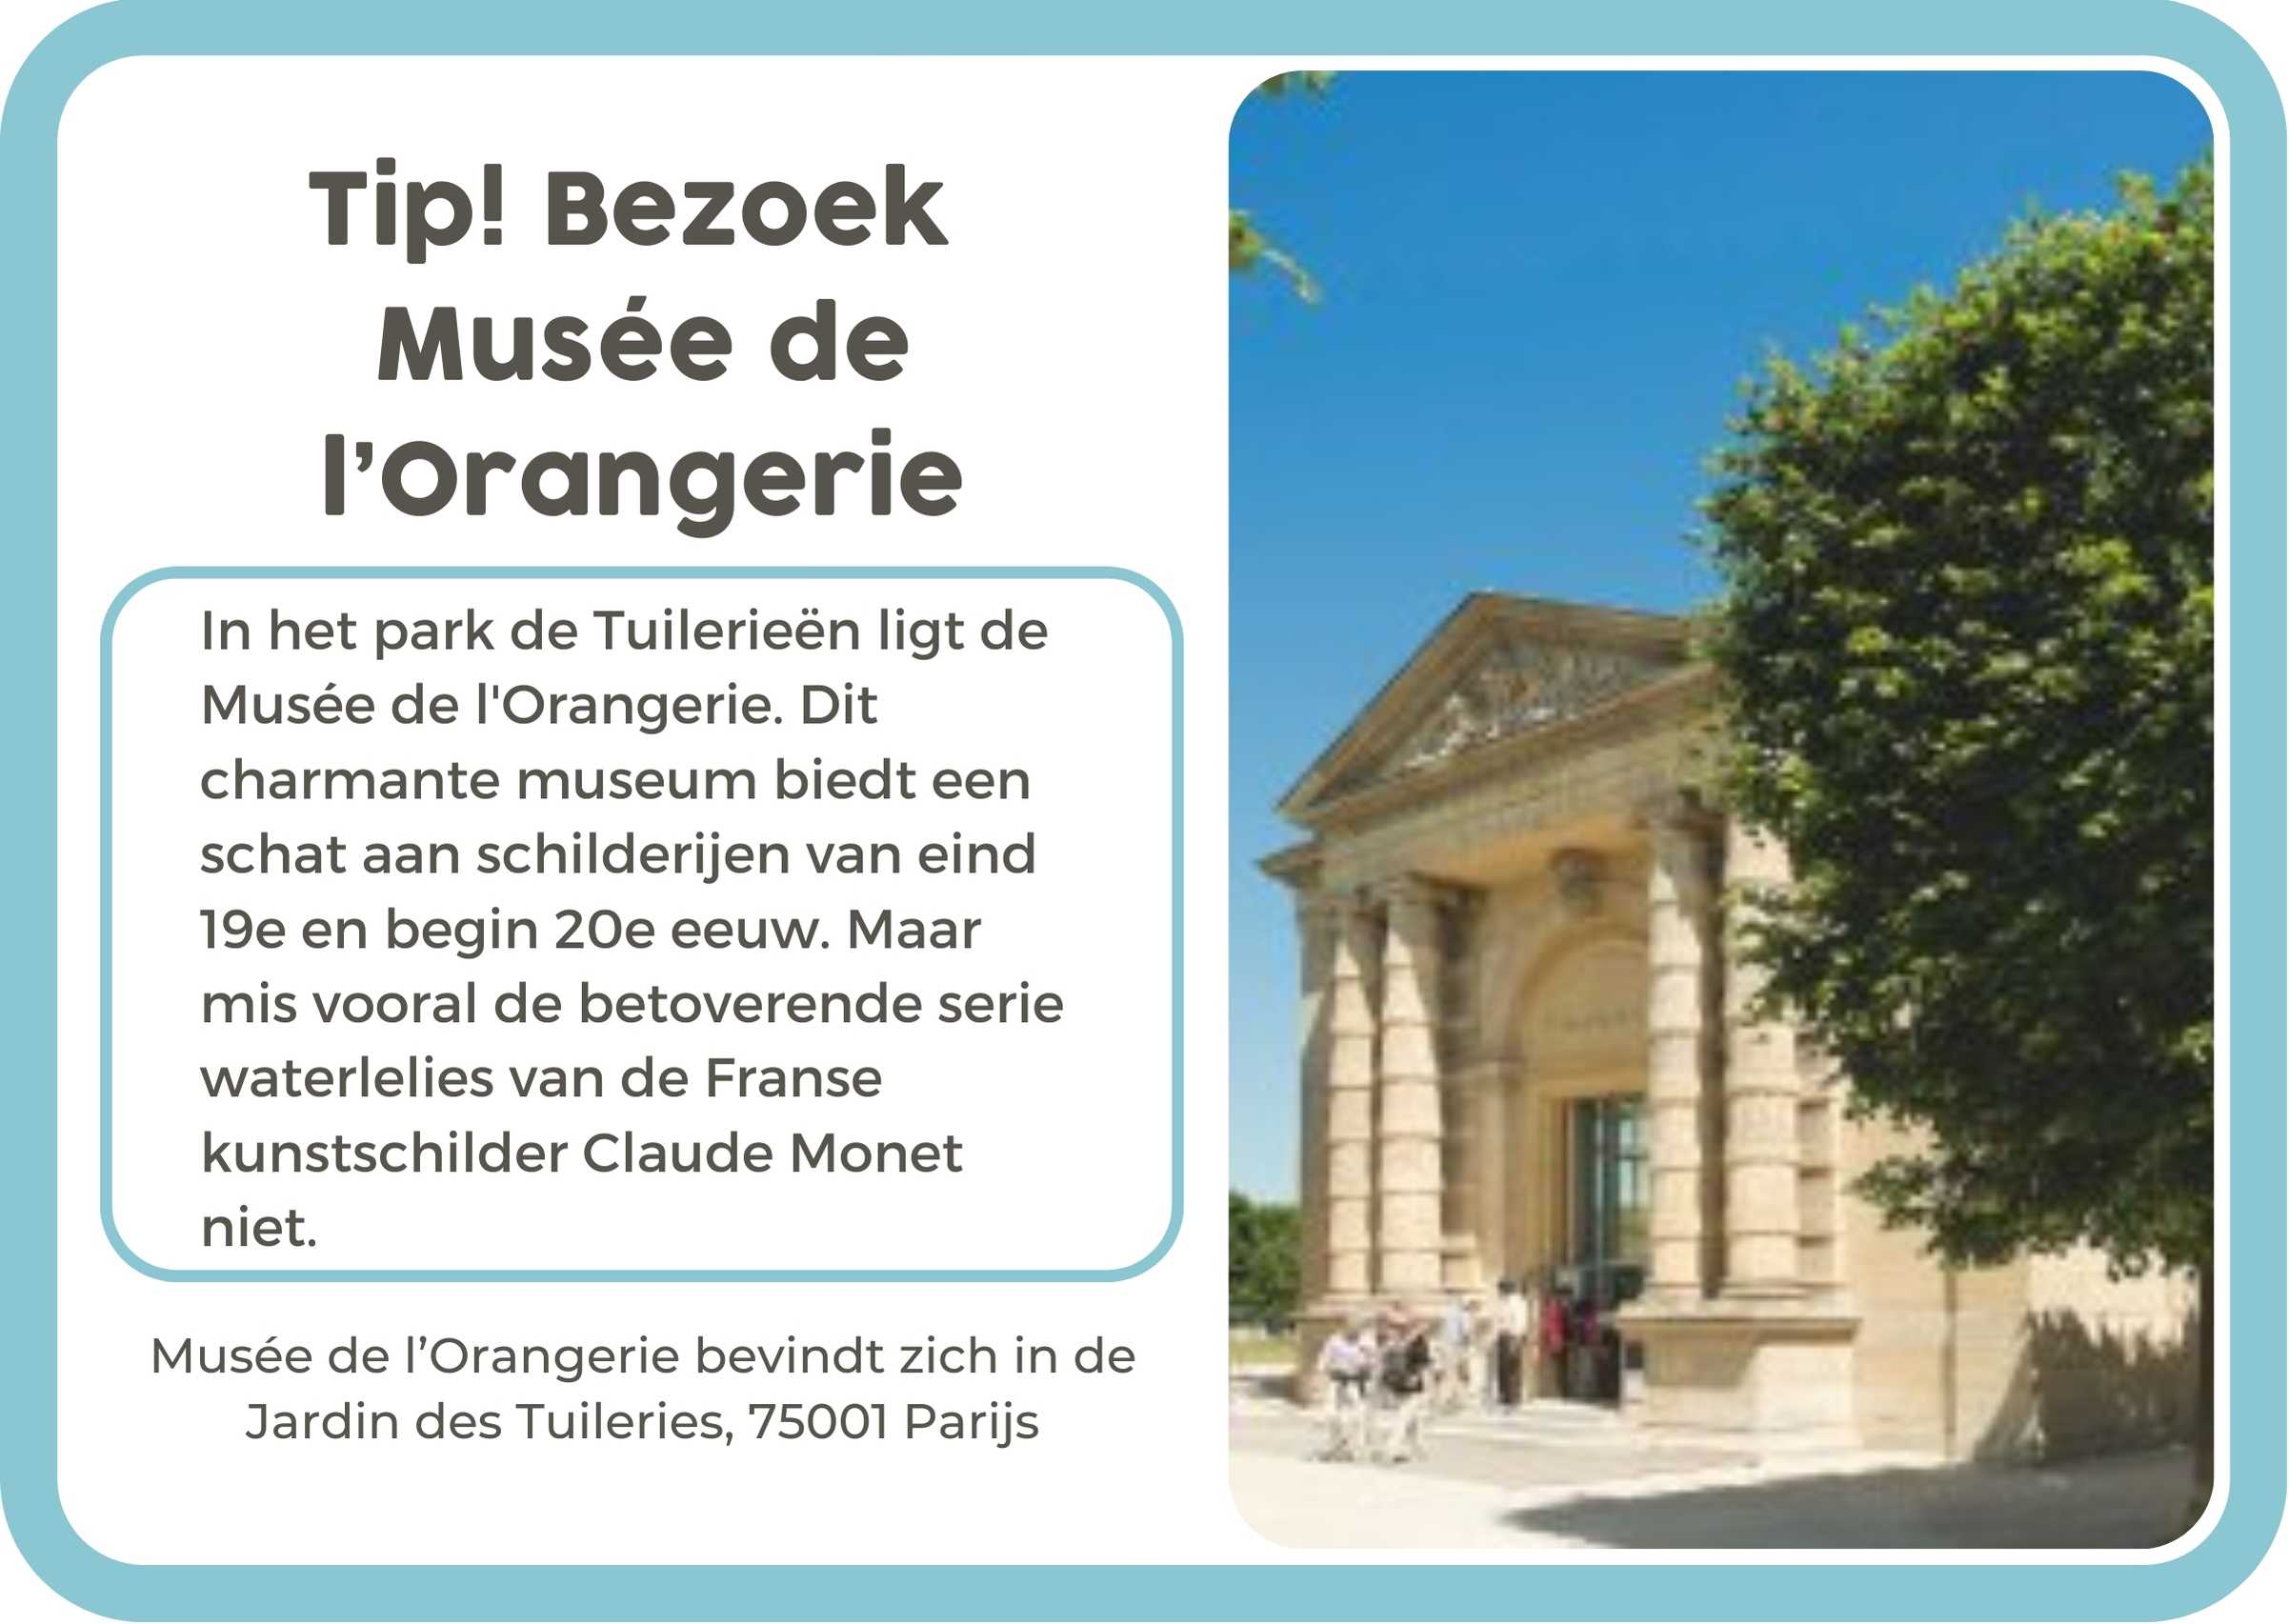 NL Musee de L'Orangerie